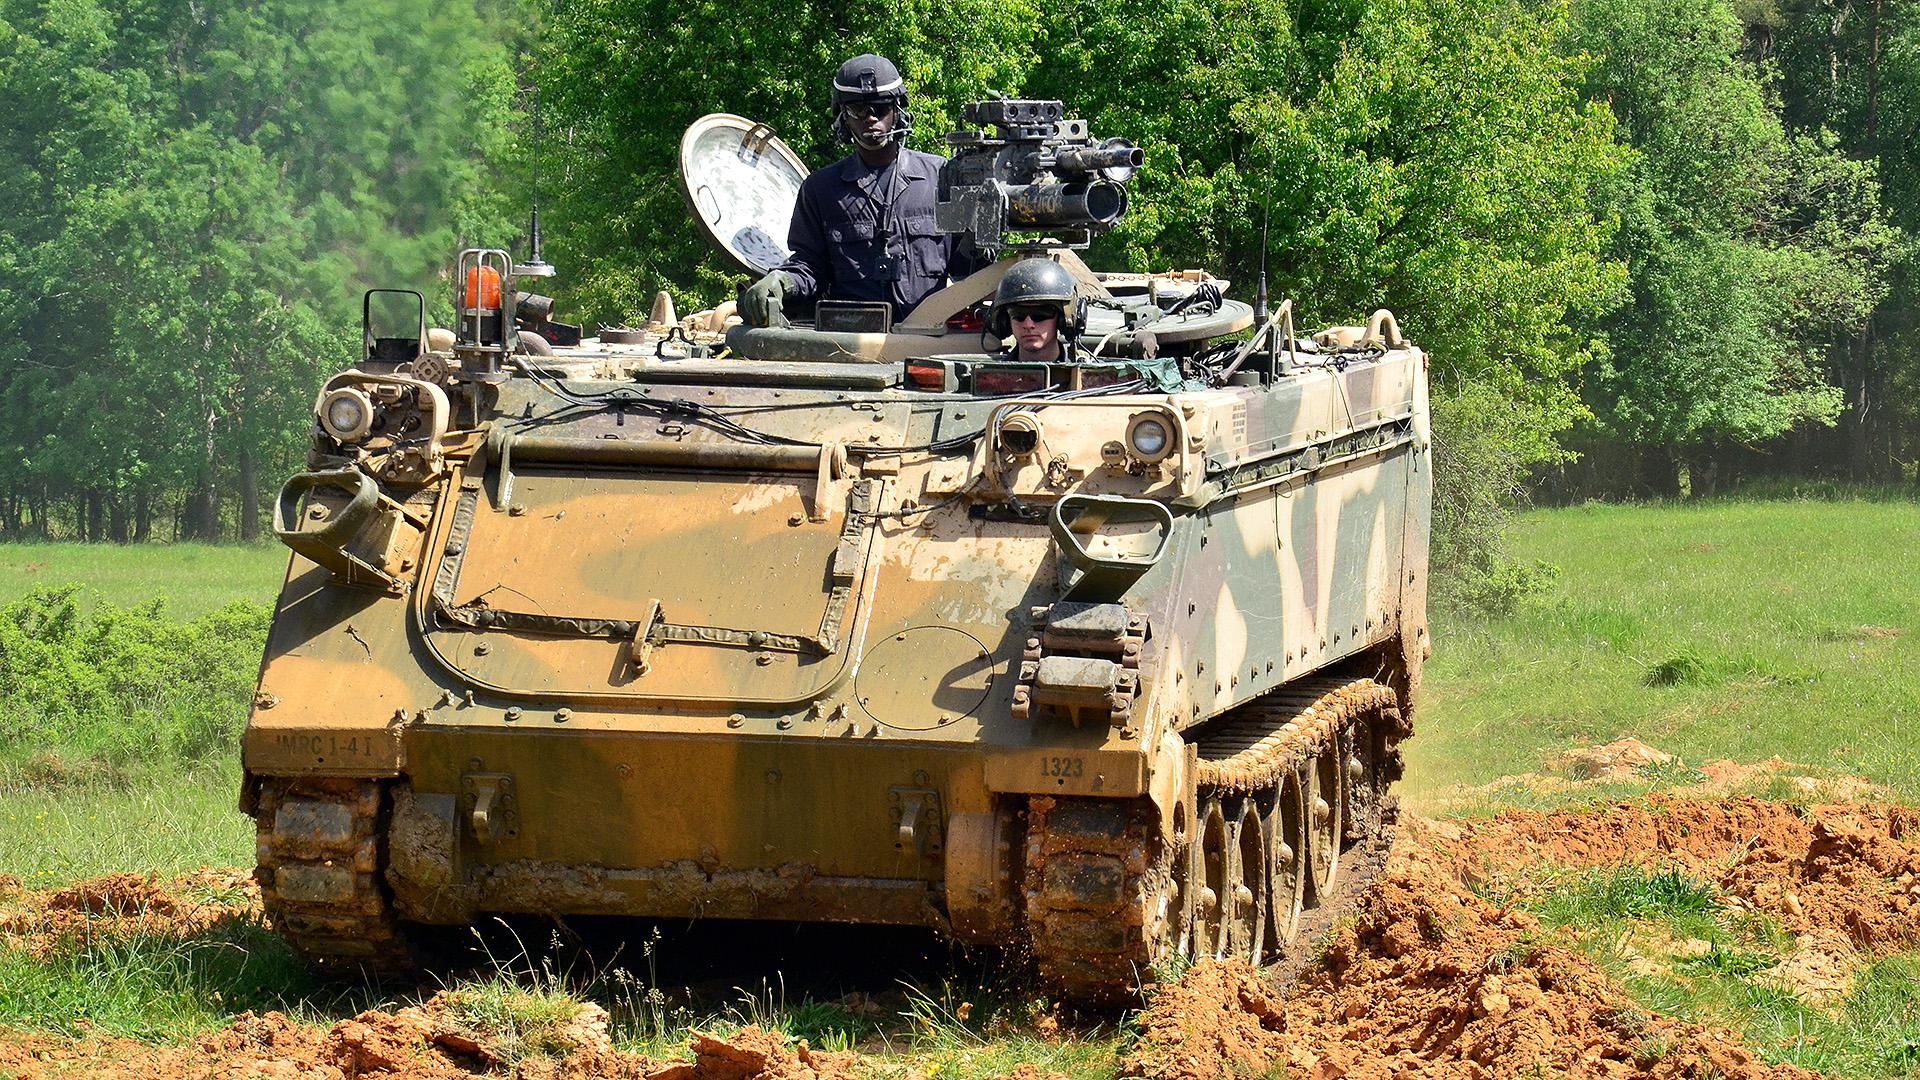 Ukraine Is Getting M113 APC